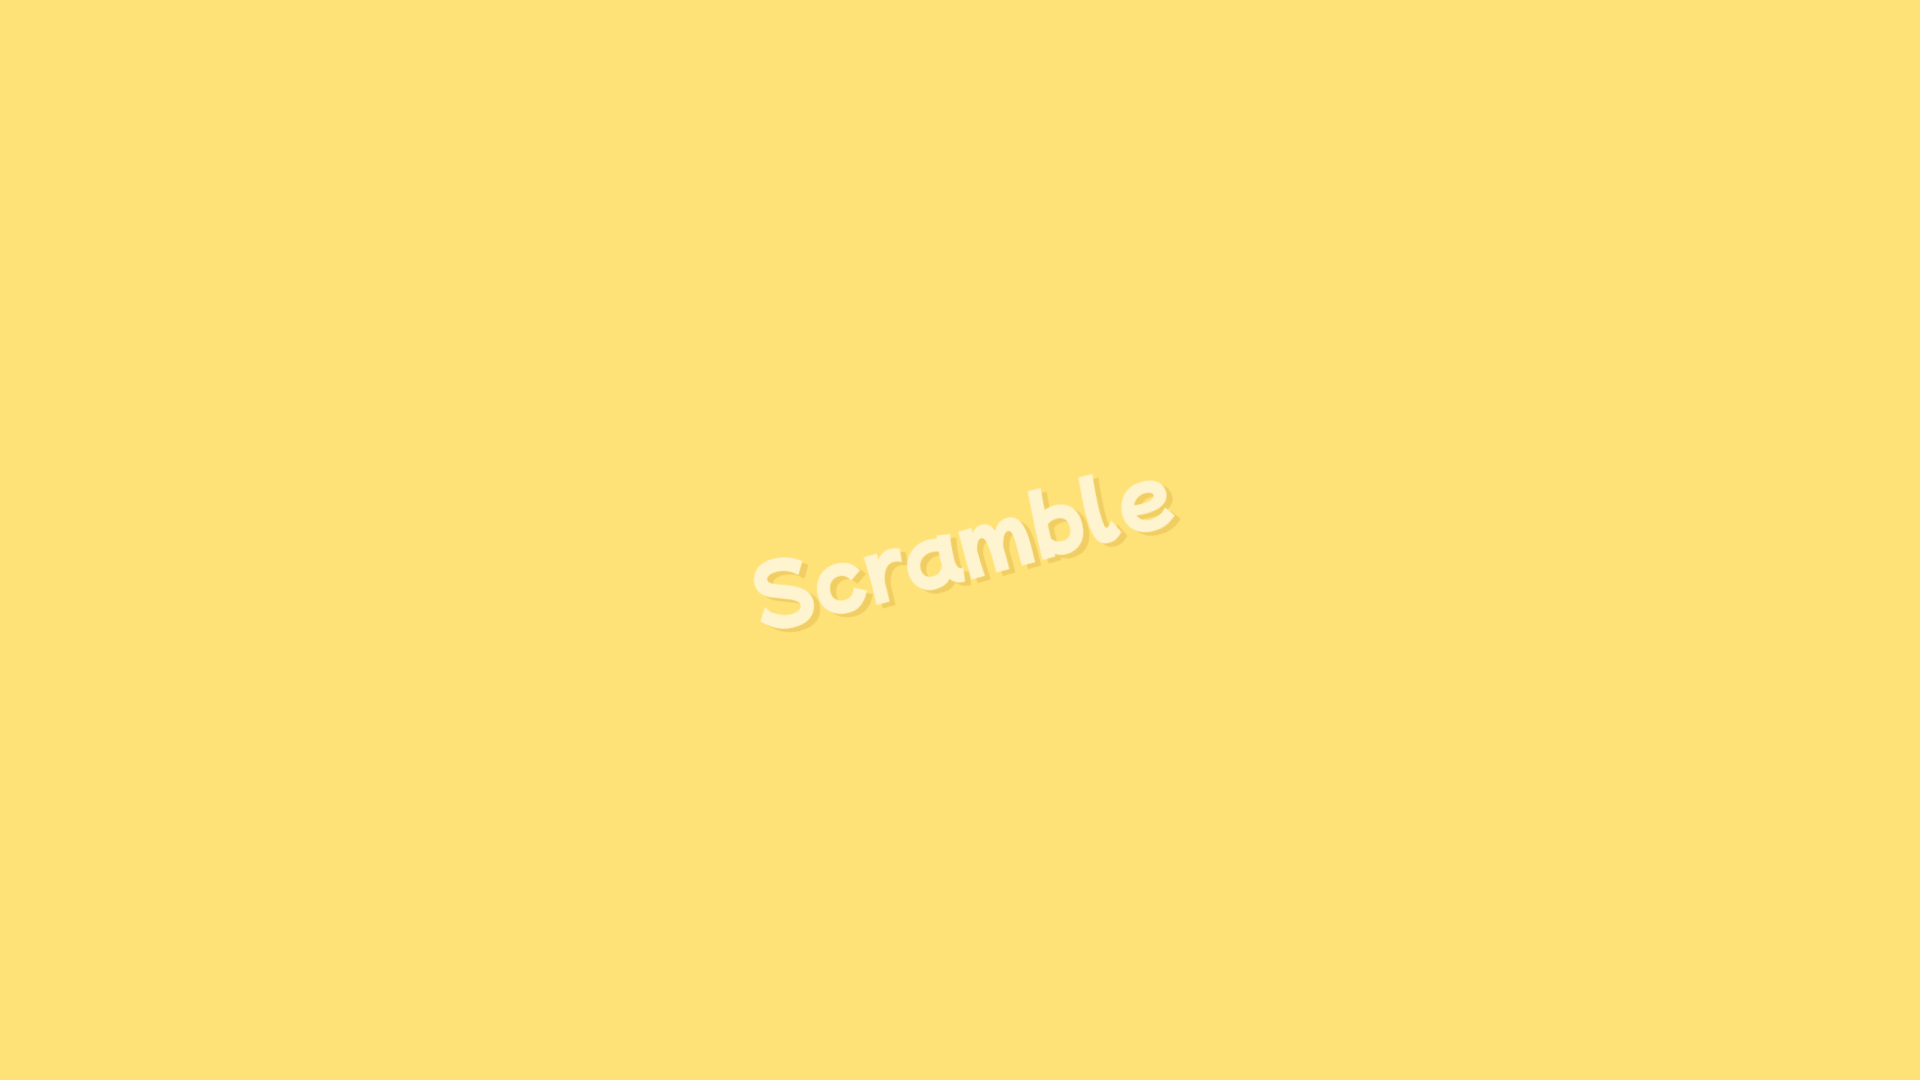 Scramble